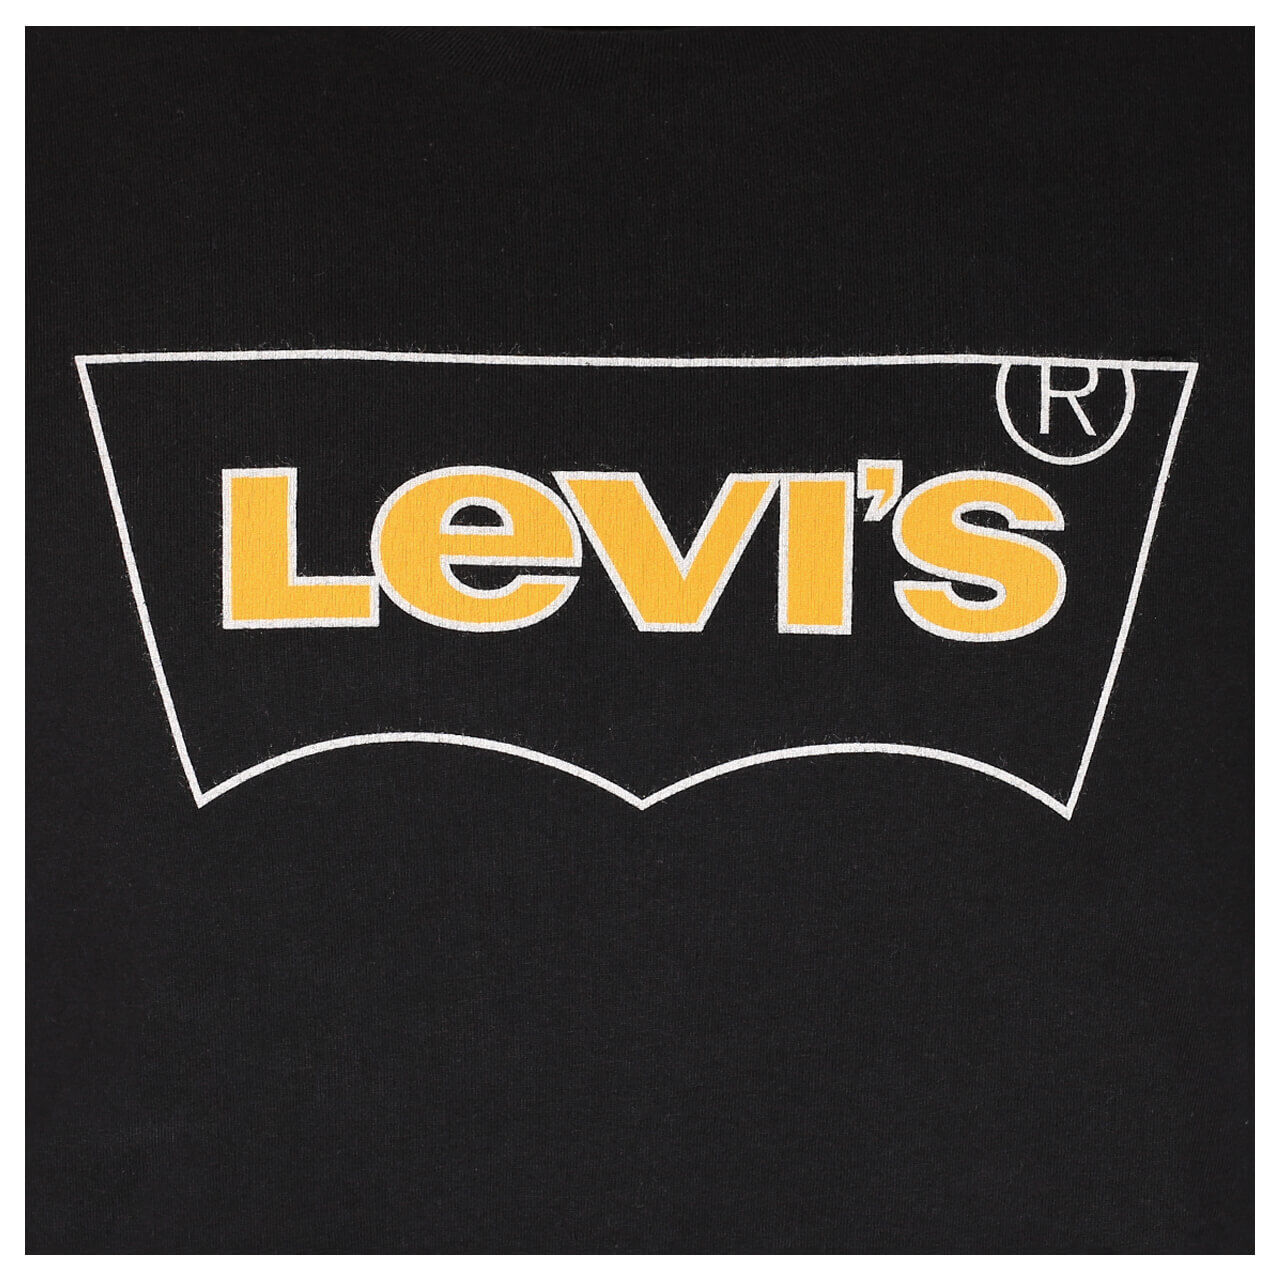 Levis Logo T-Shirt für Herren in Schwarz mit Print, FarbNr.: 0474